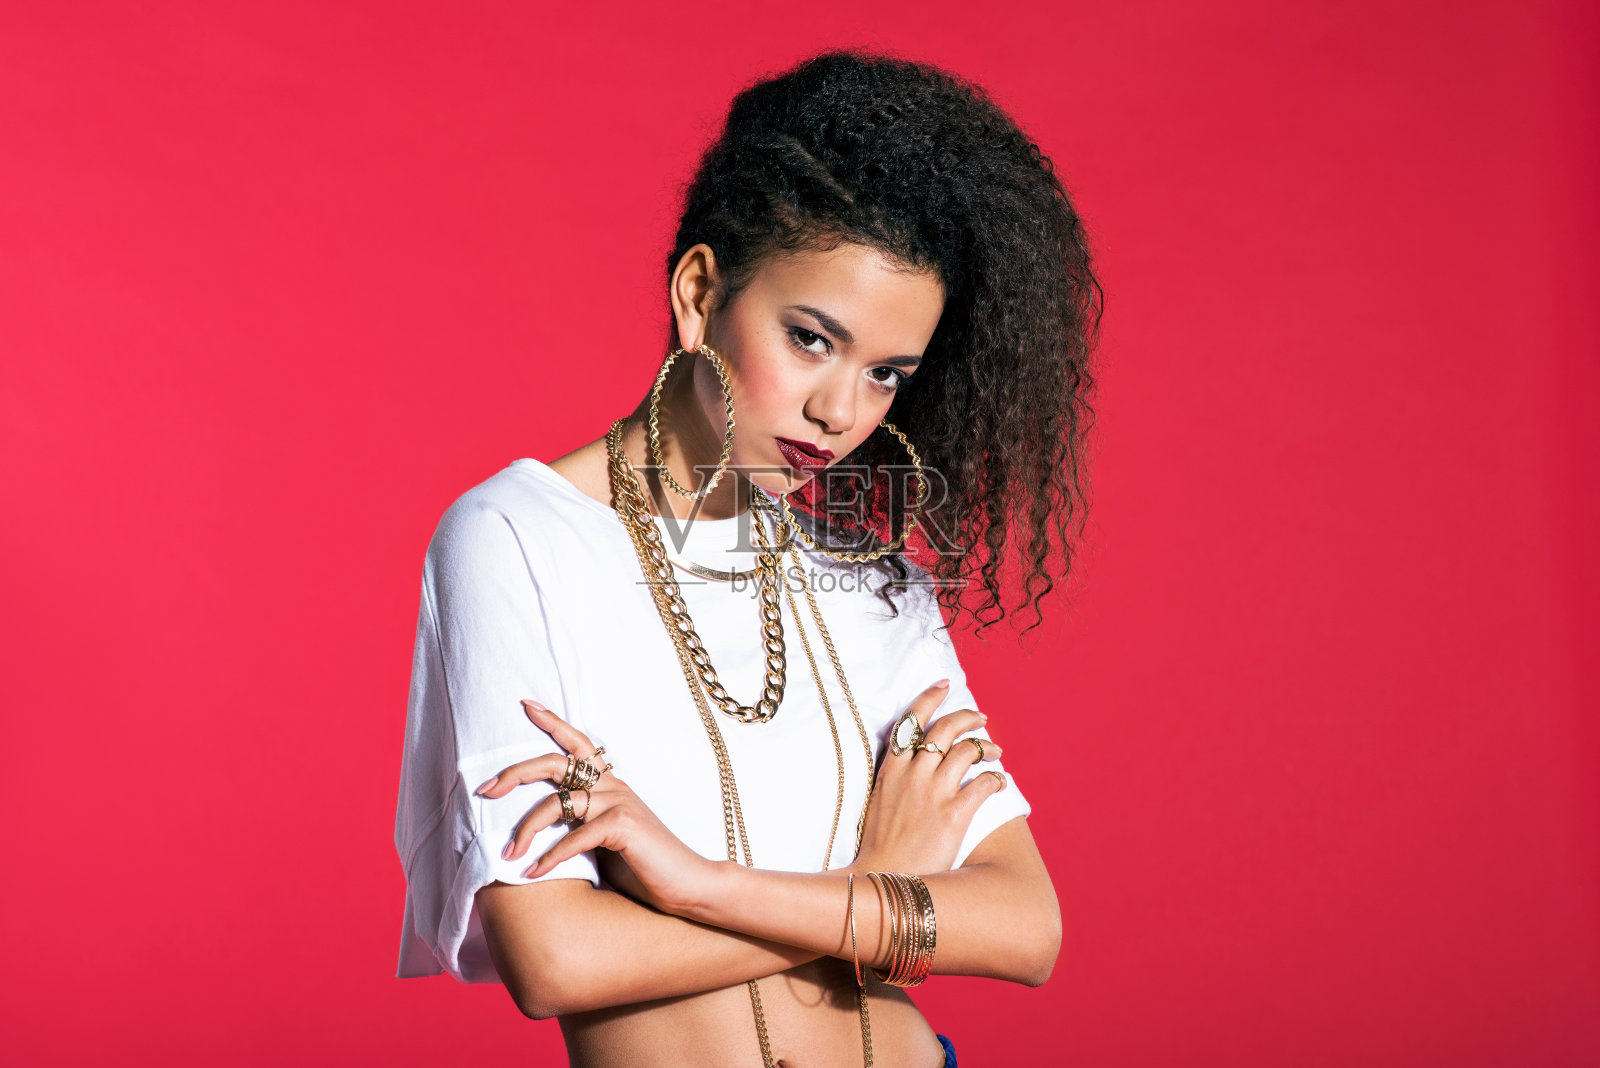 自信的拉丁年轻女子嘻哈风格的红色背景照片摄影图片